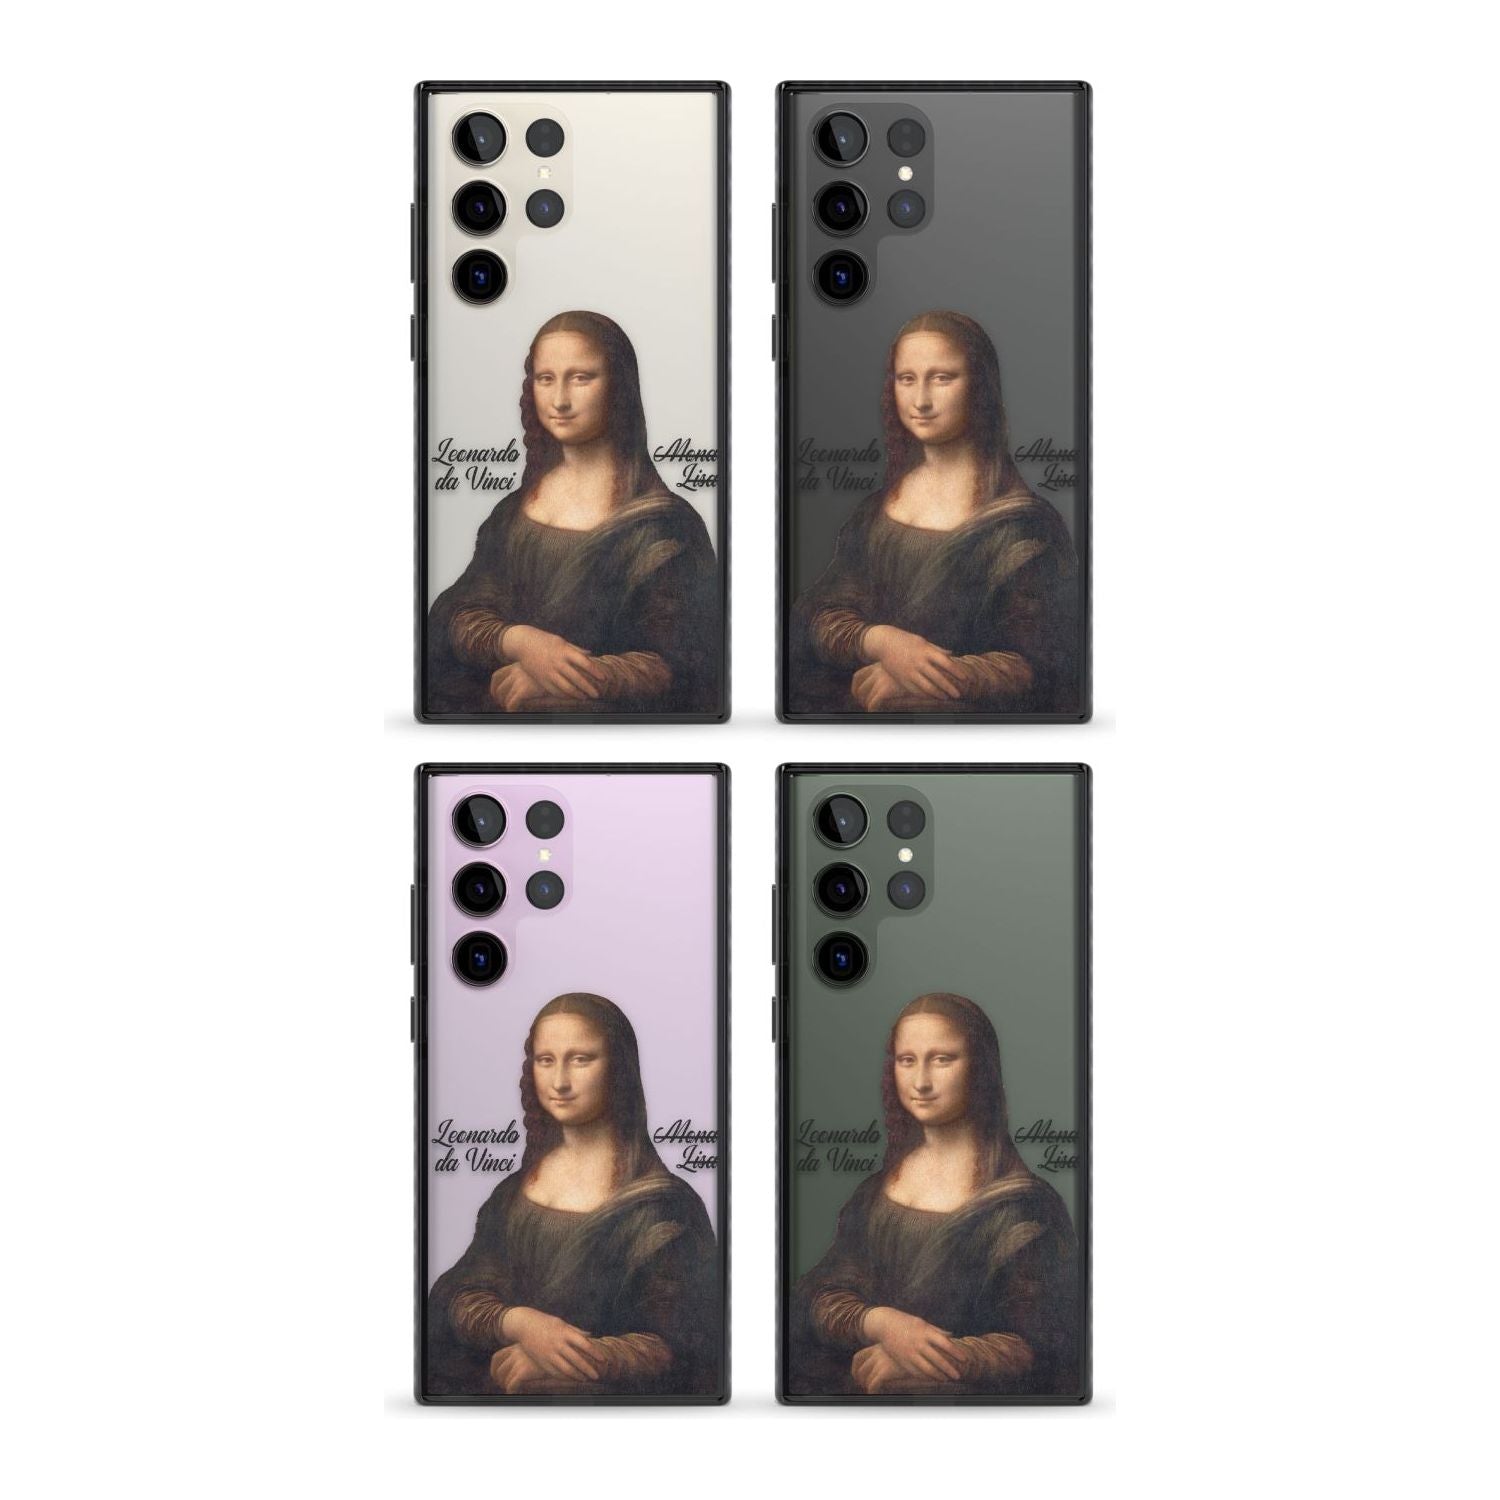 Mona Lisa Cutout